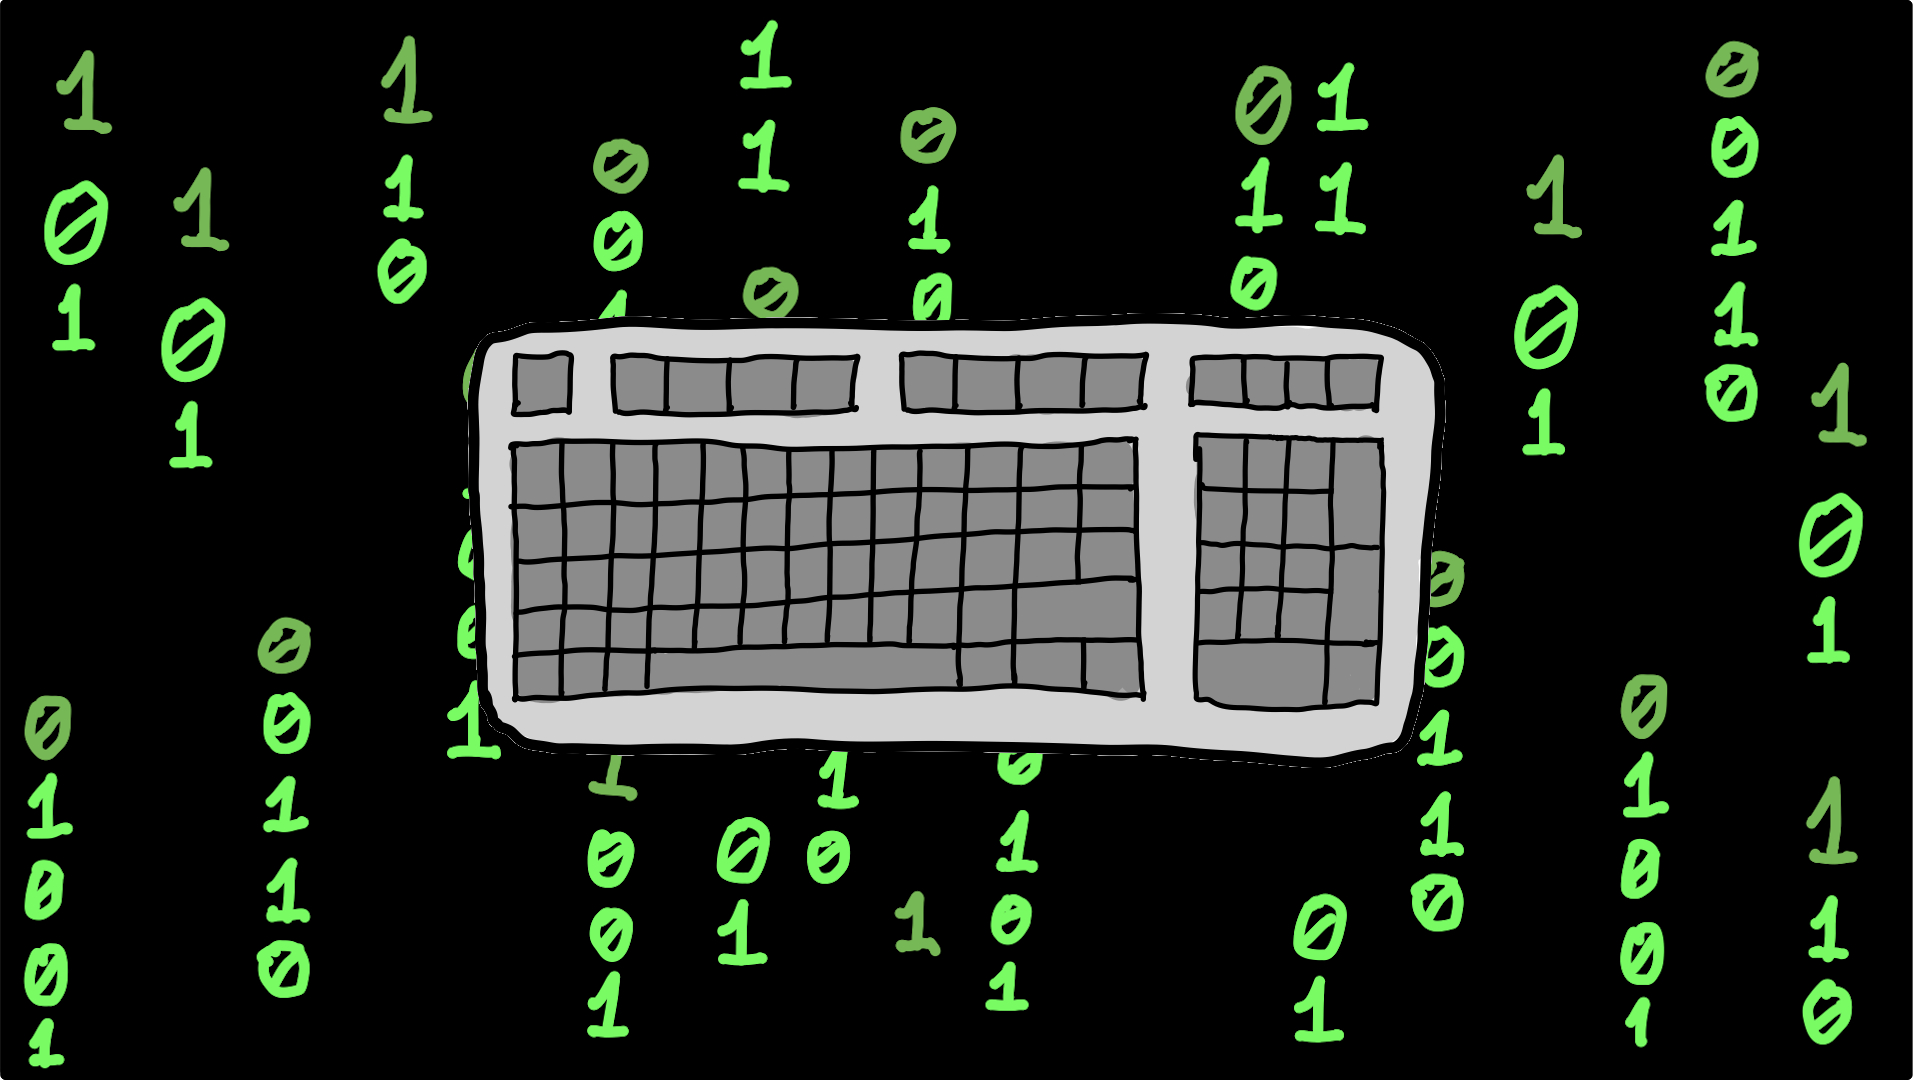 A keyboard in the matrix